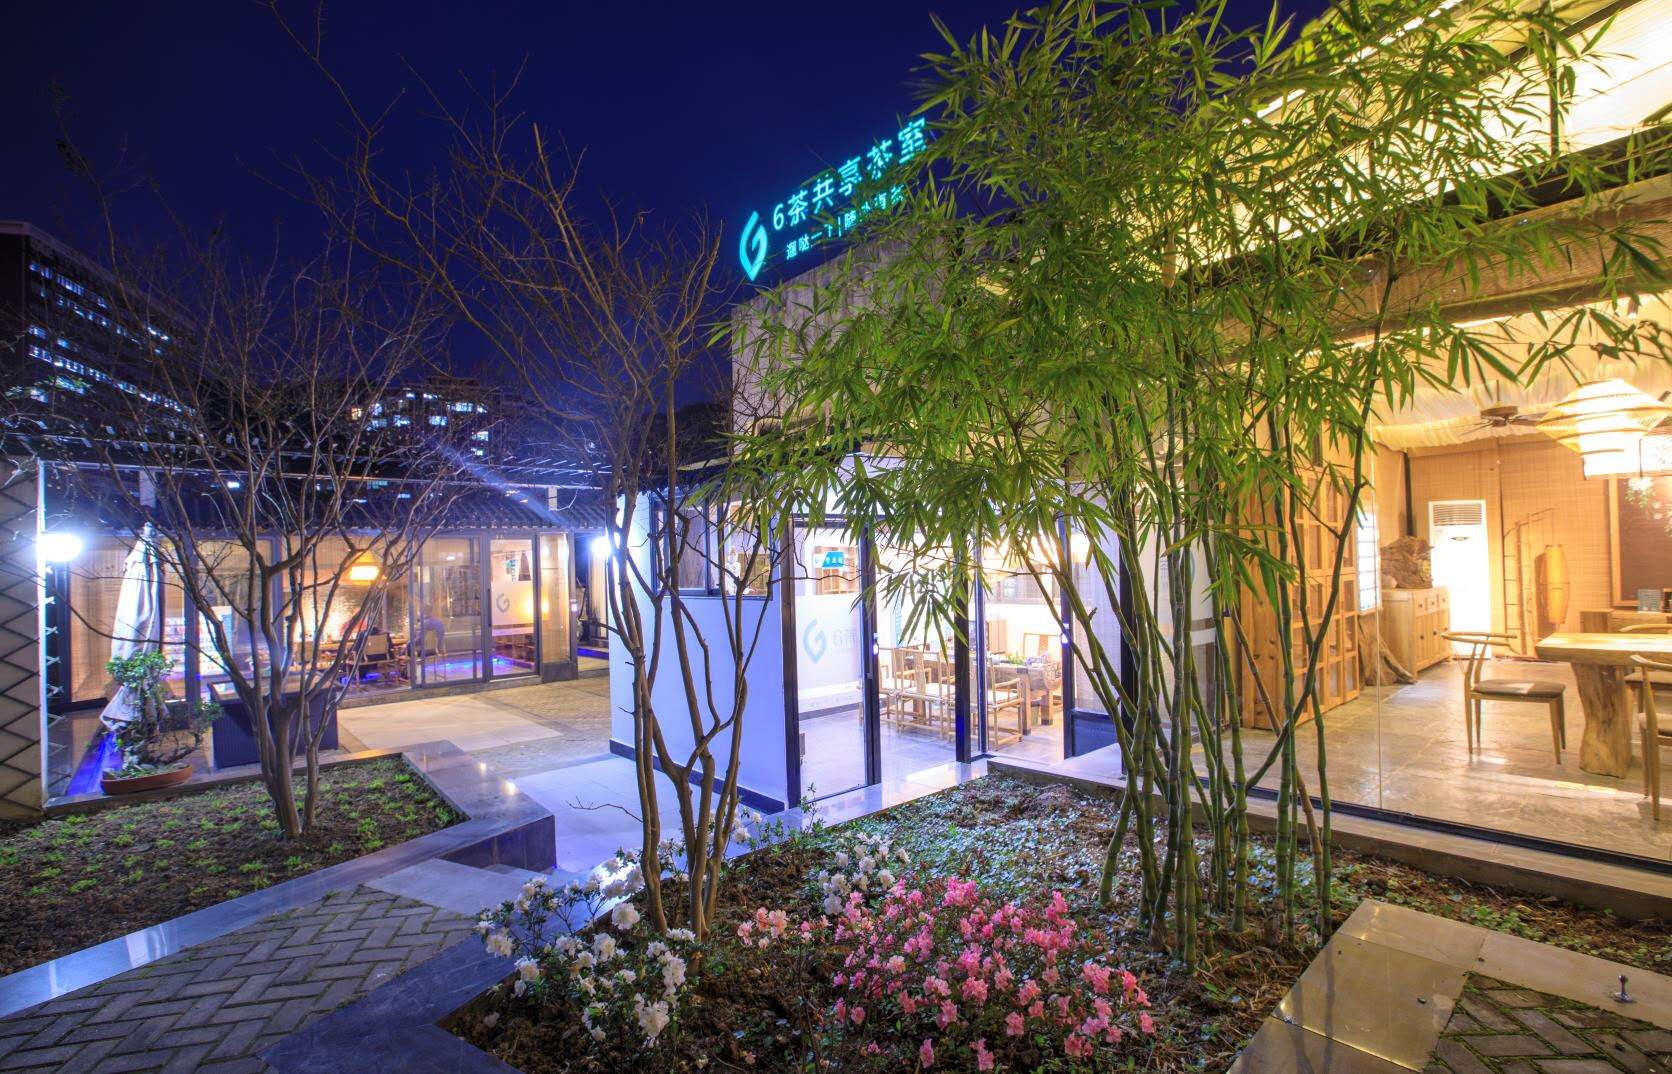 6茶想打造中式茶馆的“第三空间” 已签约待开业门店120家